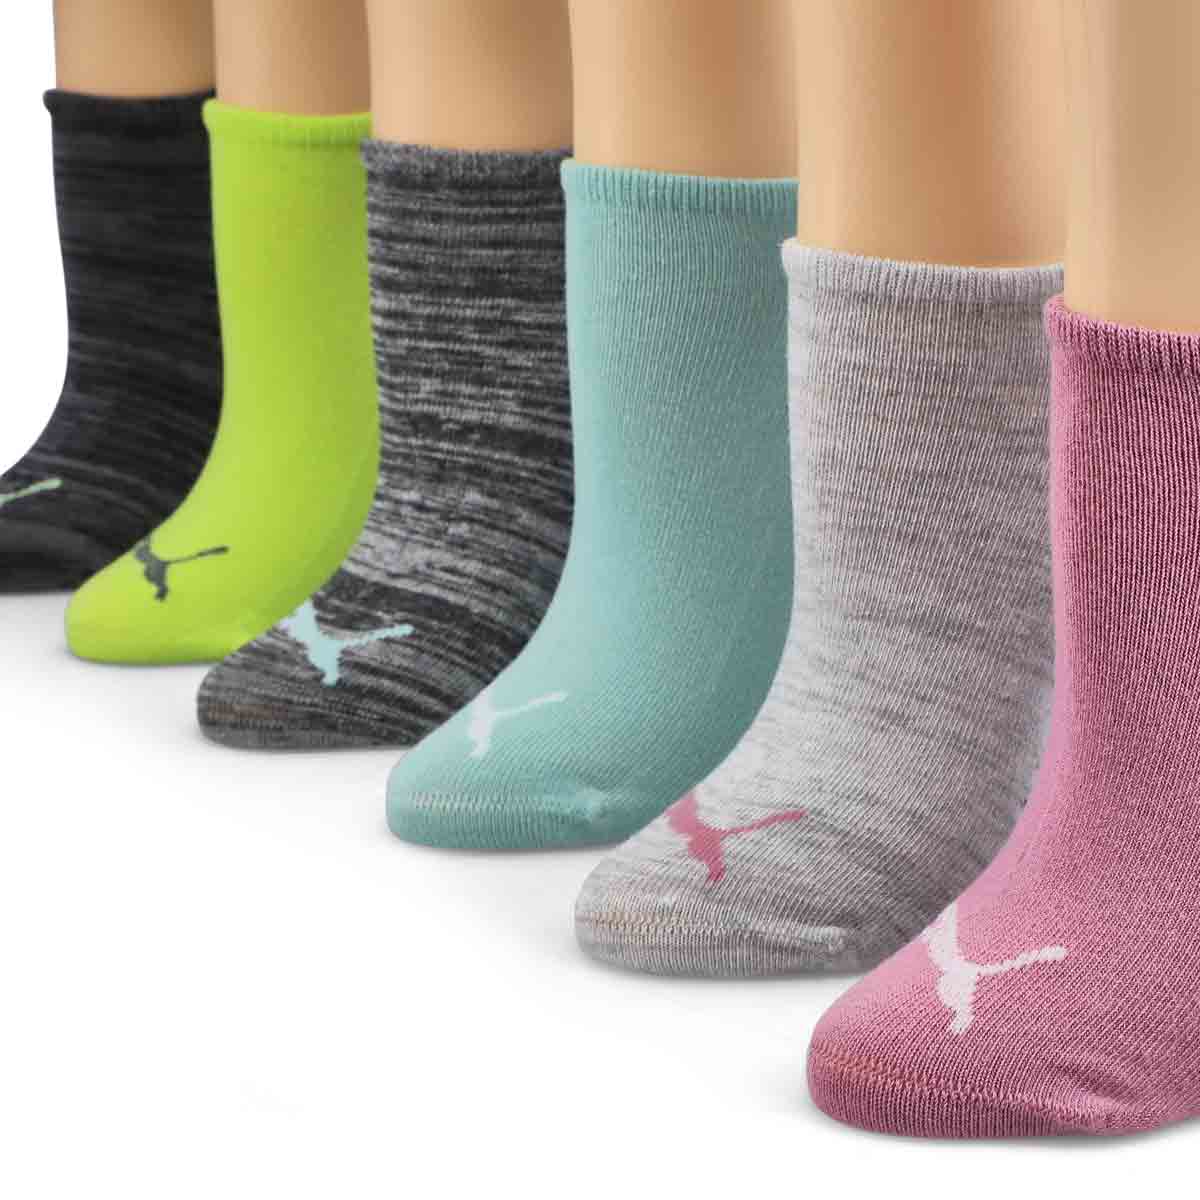 Women's Fashion Low Cut Sock 6 Pack - Multi